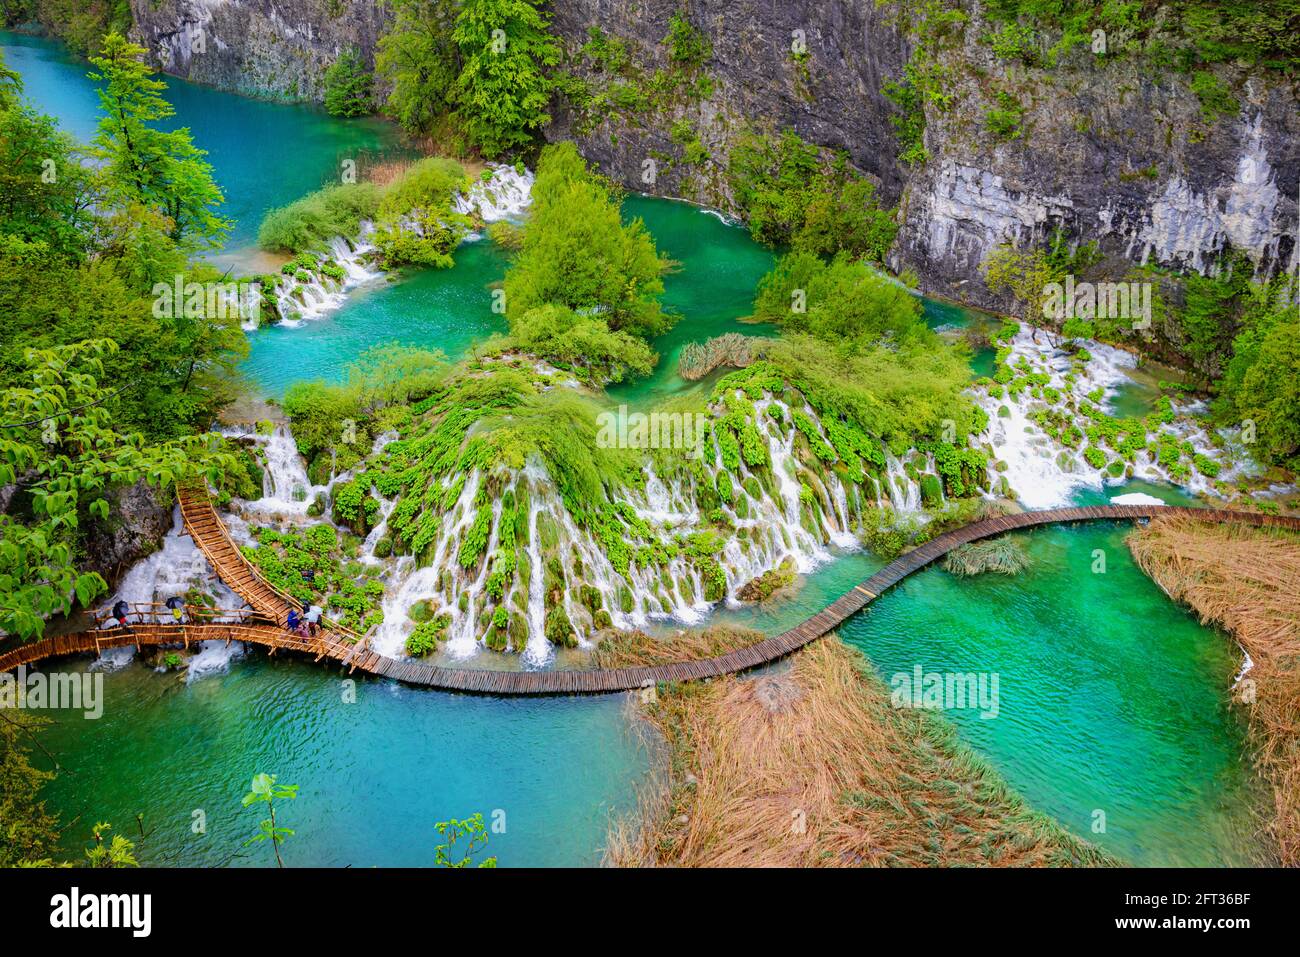 Vista aerea dall'alto di un parco naturale e di un lago turchese all'aperto a Plitvice, Croazia nella stagione primaverile Foto Stock